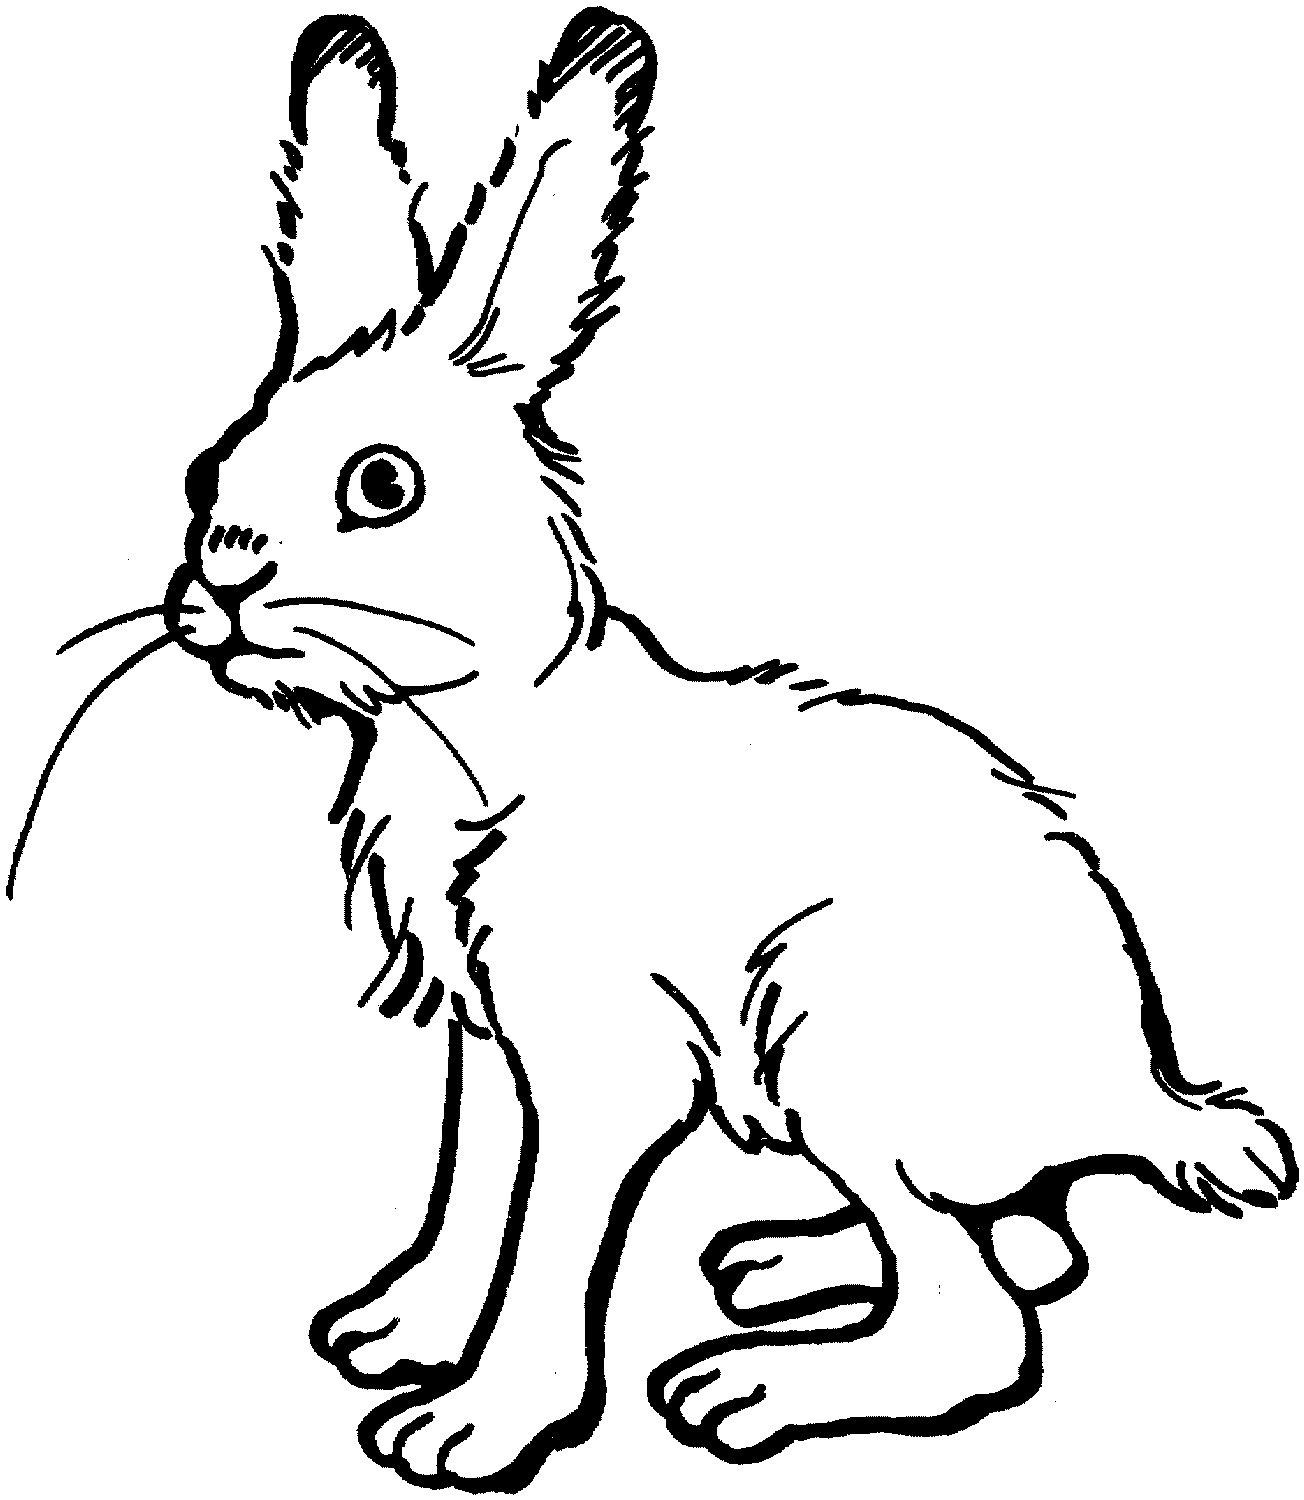 الأرنب طويل القامة لديه أربعة أرجل رفيعة من الأرنب